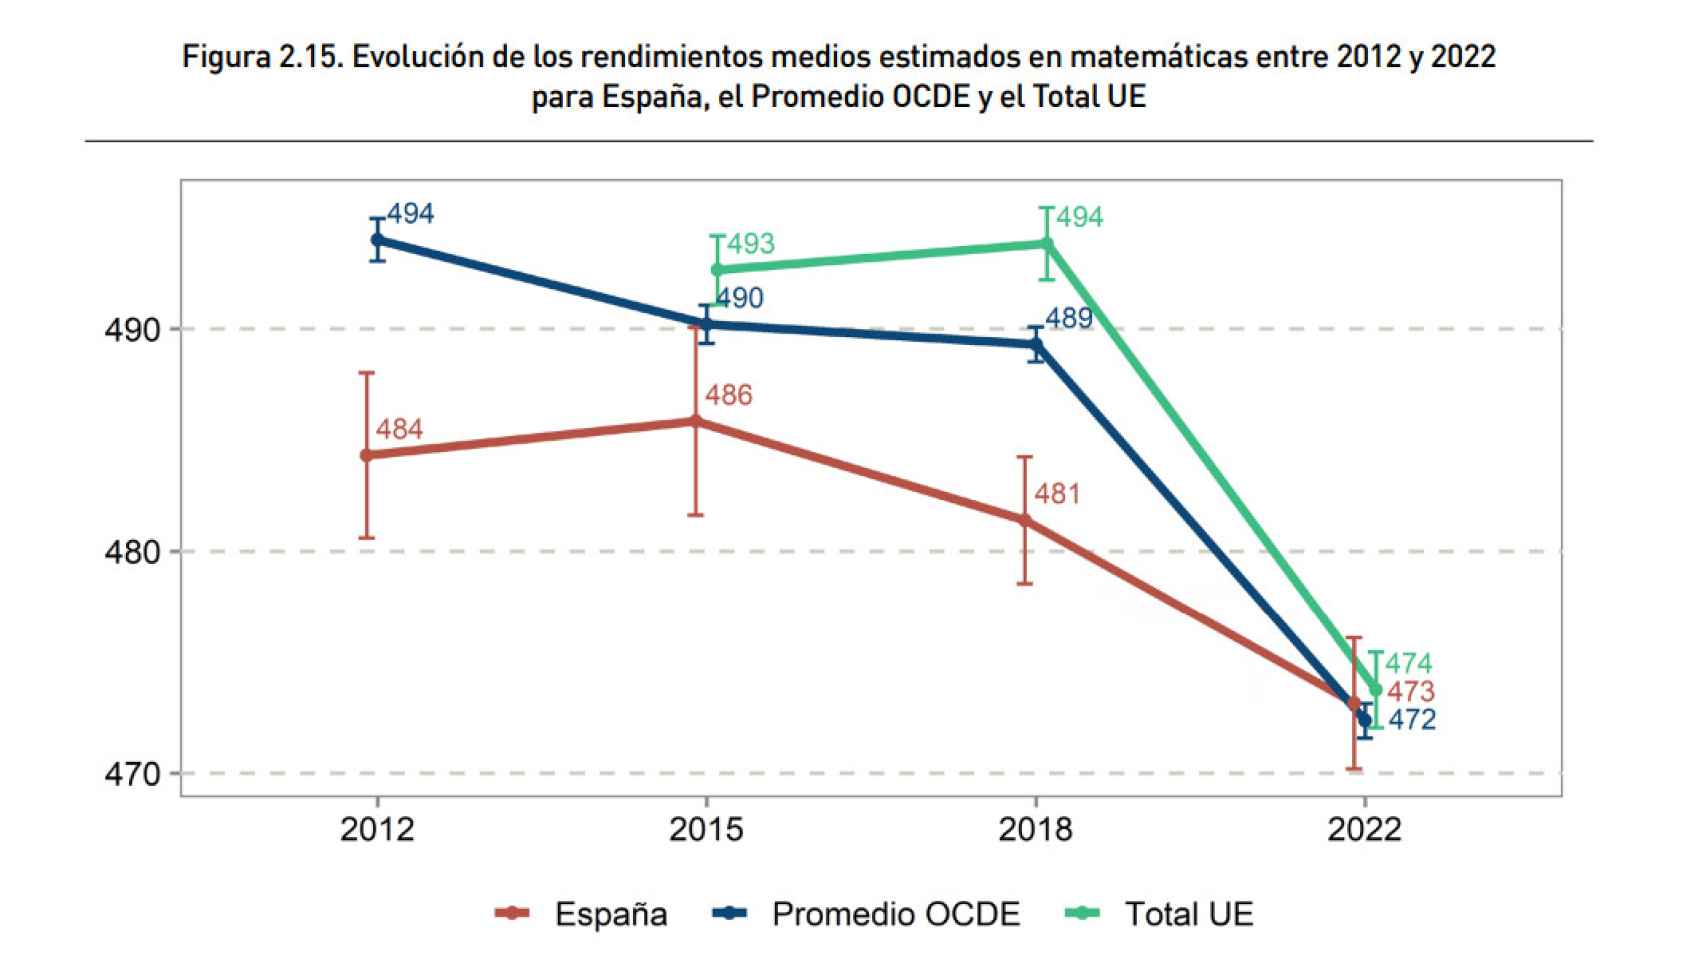 Evolución decreciente del rendimiento en Matemáticas de 2012 a 2022.